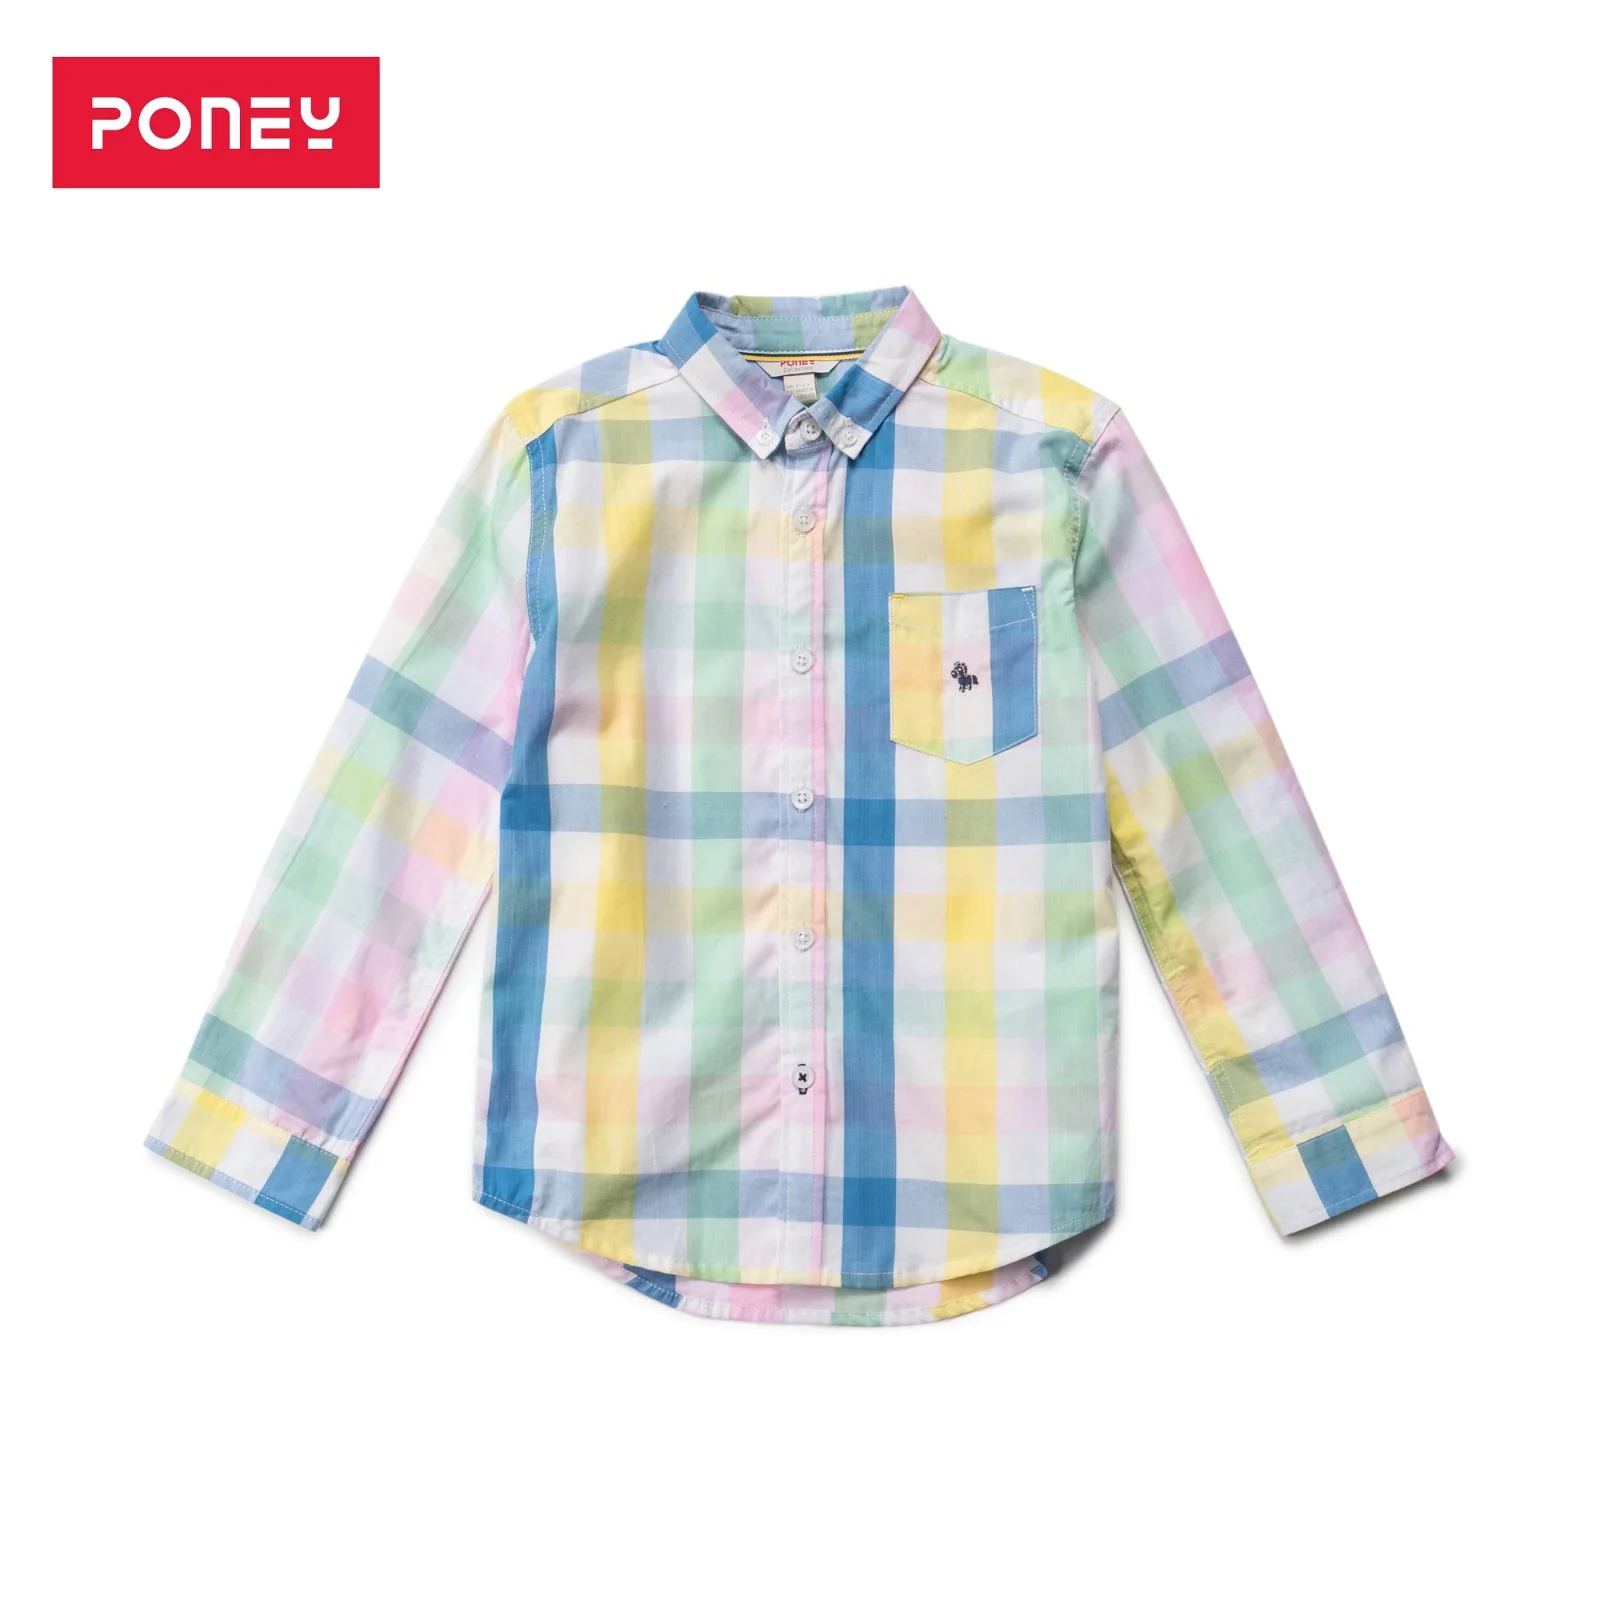 Image of Poney Boys Long Sleeve Shirt 2066